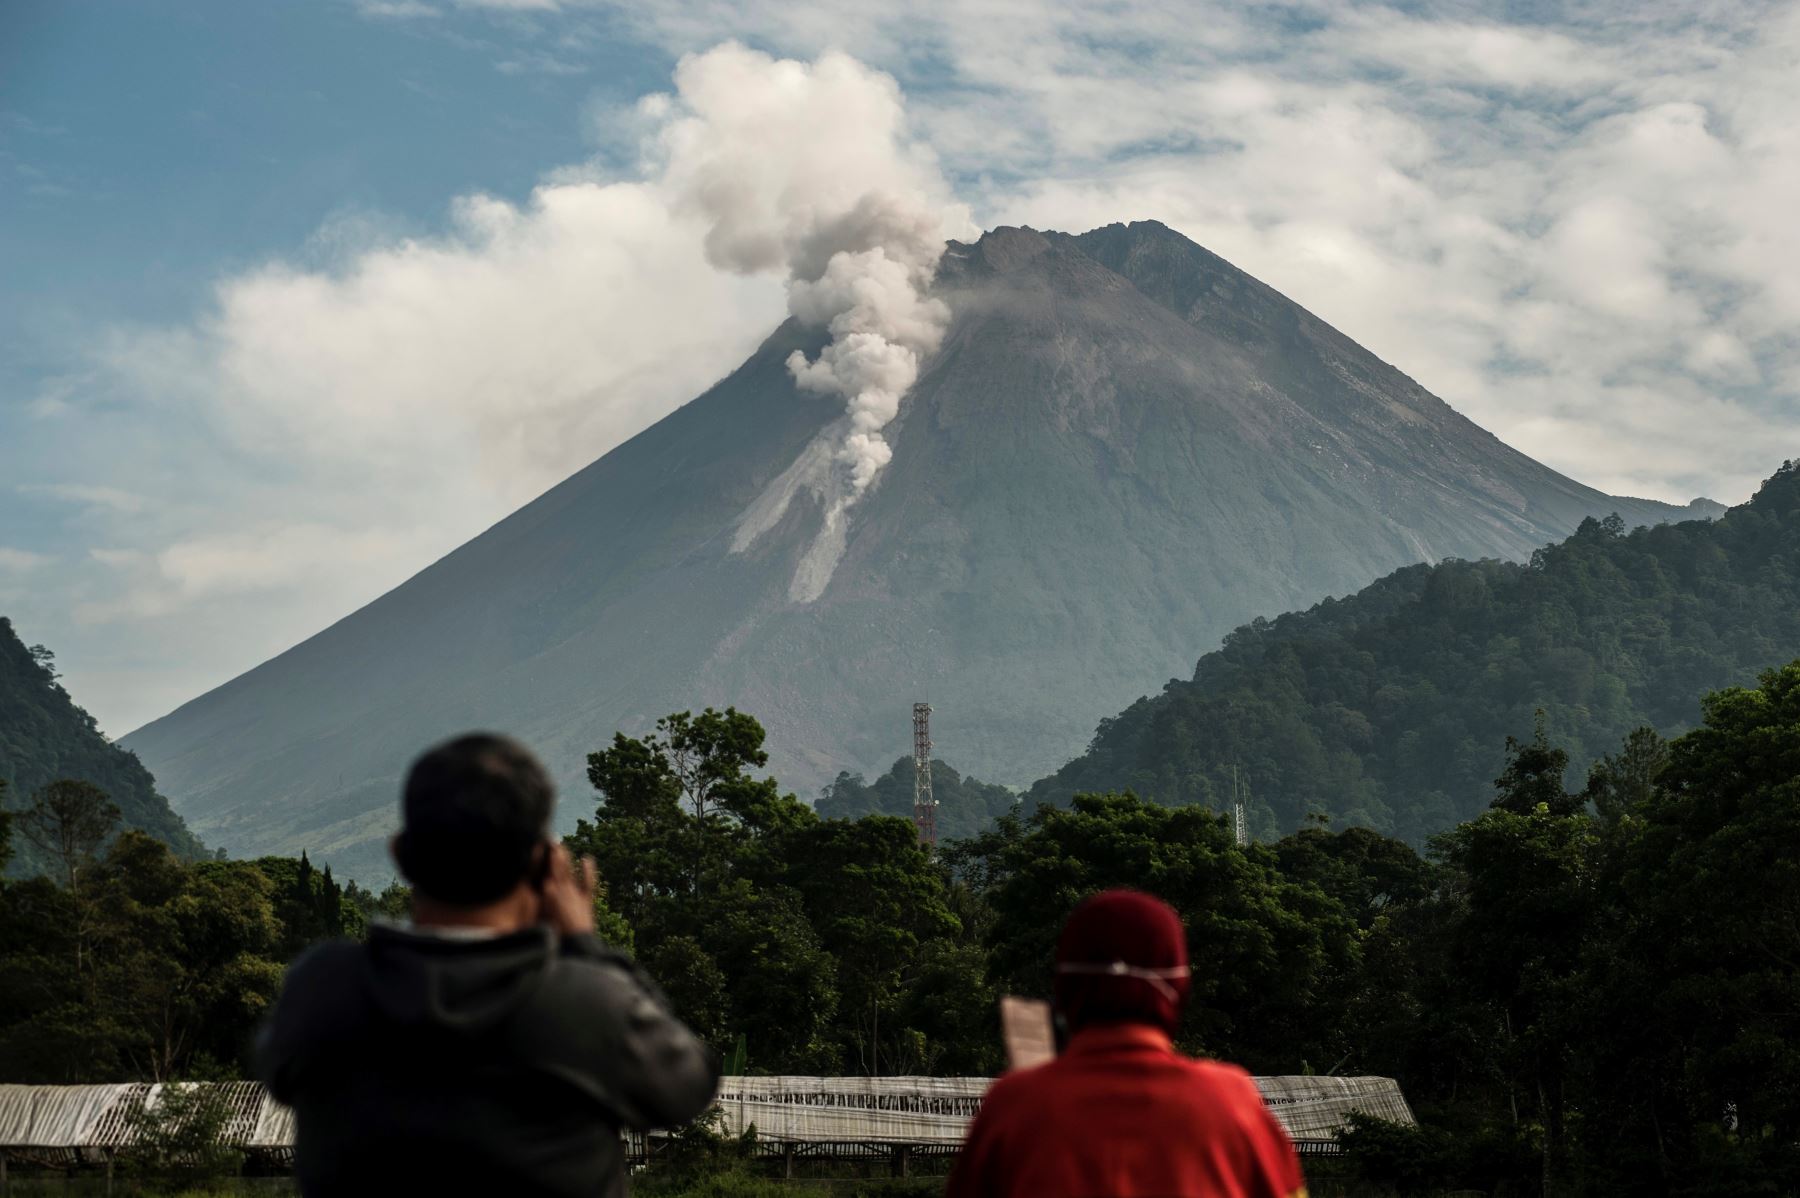 Volcán indonesio, Mount Merapi, entra en erupción y arroja ceniza caliente a tres kilómetros de distancia.  Foto: AFP